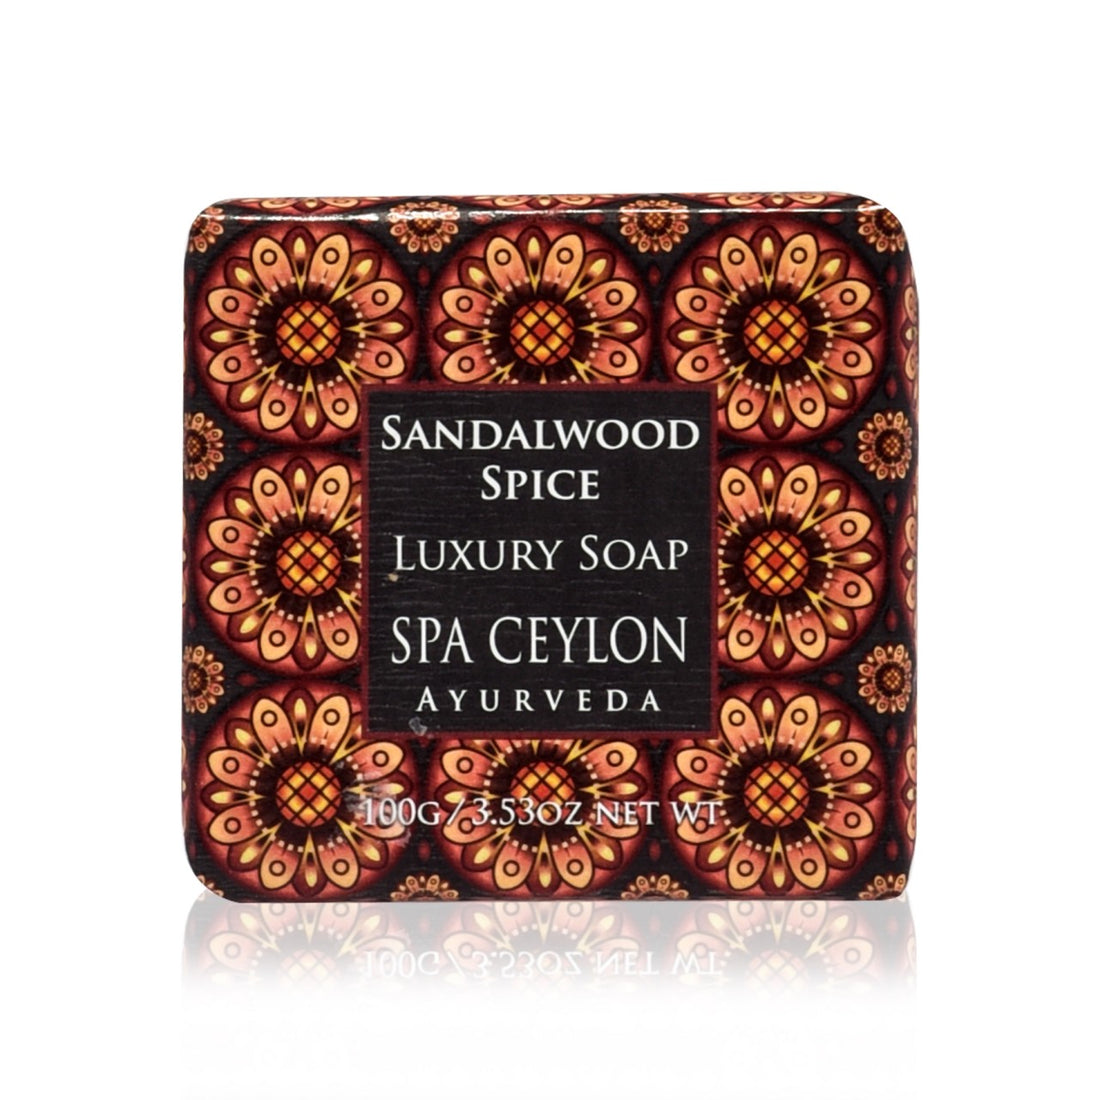 Sandalwood Spice Luxury Soap